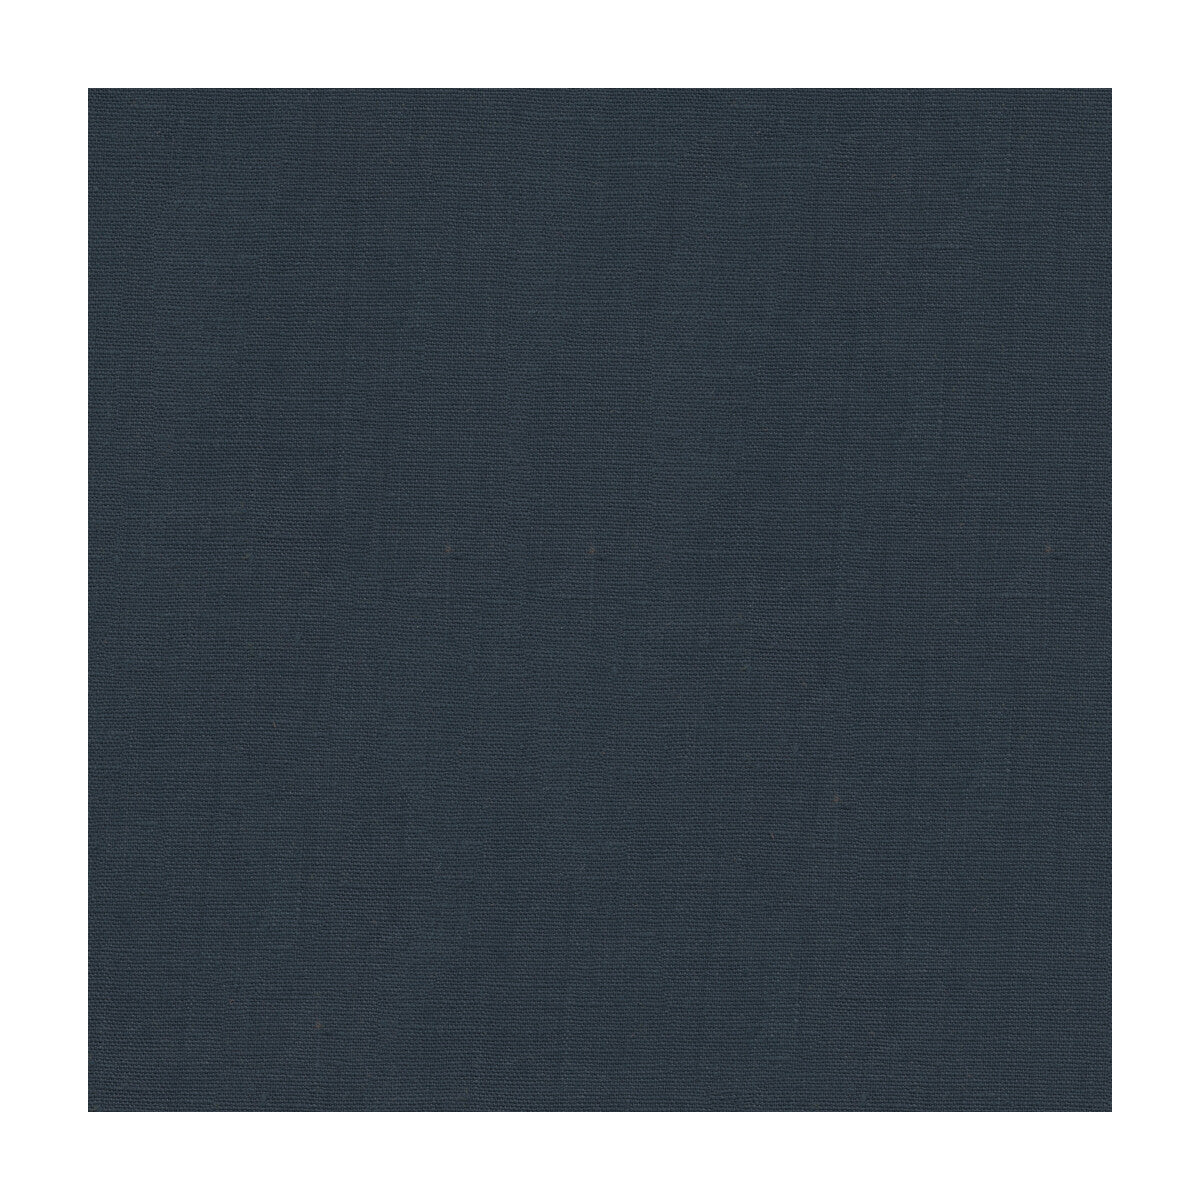 Dublin fabric in navy color - pattern 32344.50.0 - by Kravet Basics